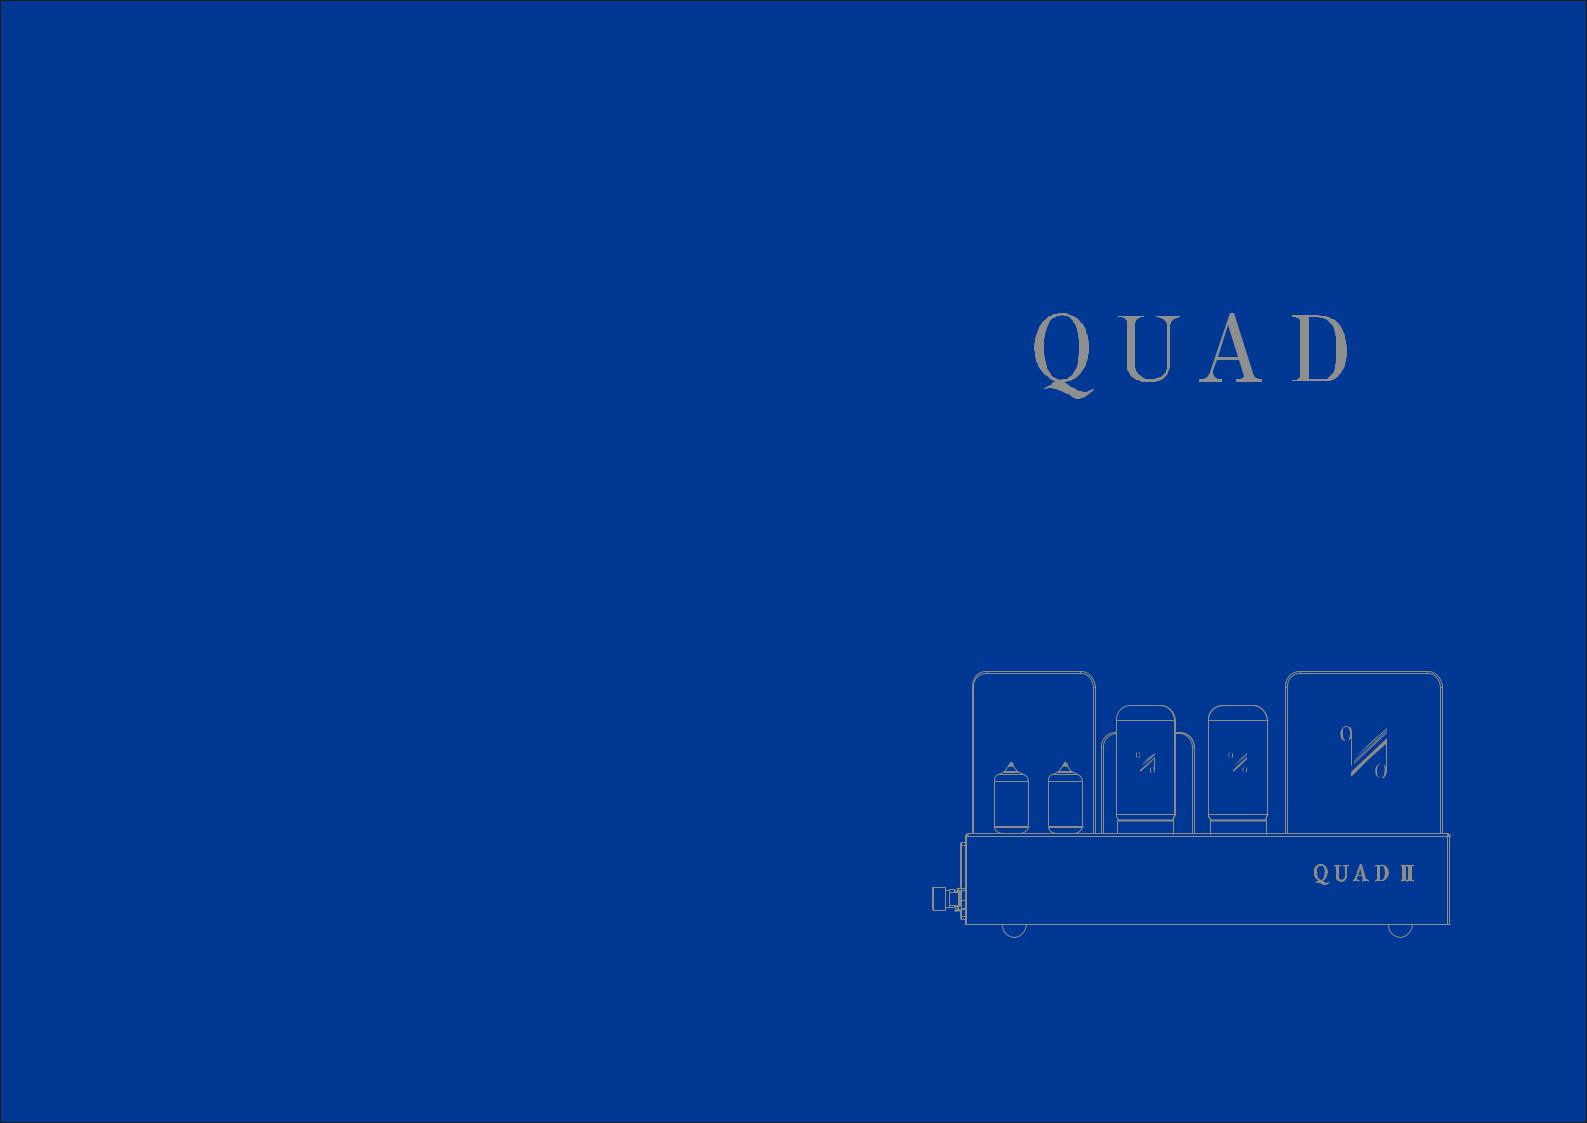 Quad II Classic Owners manual